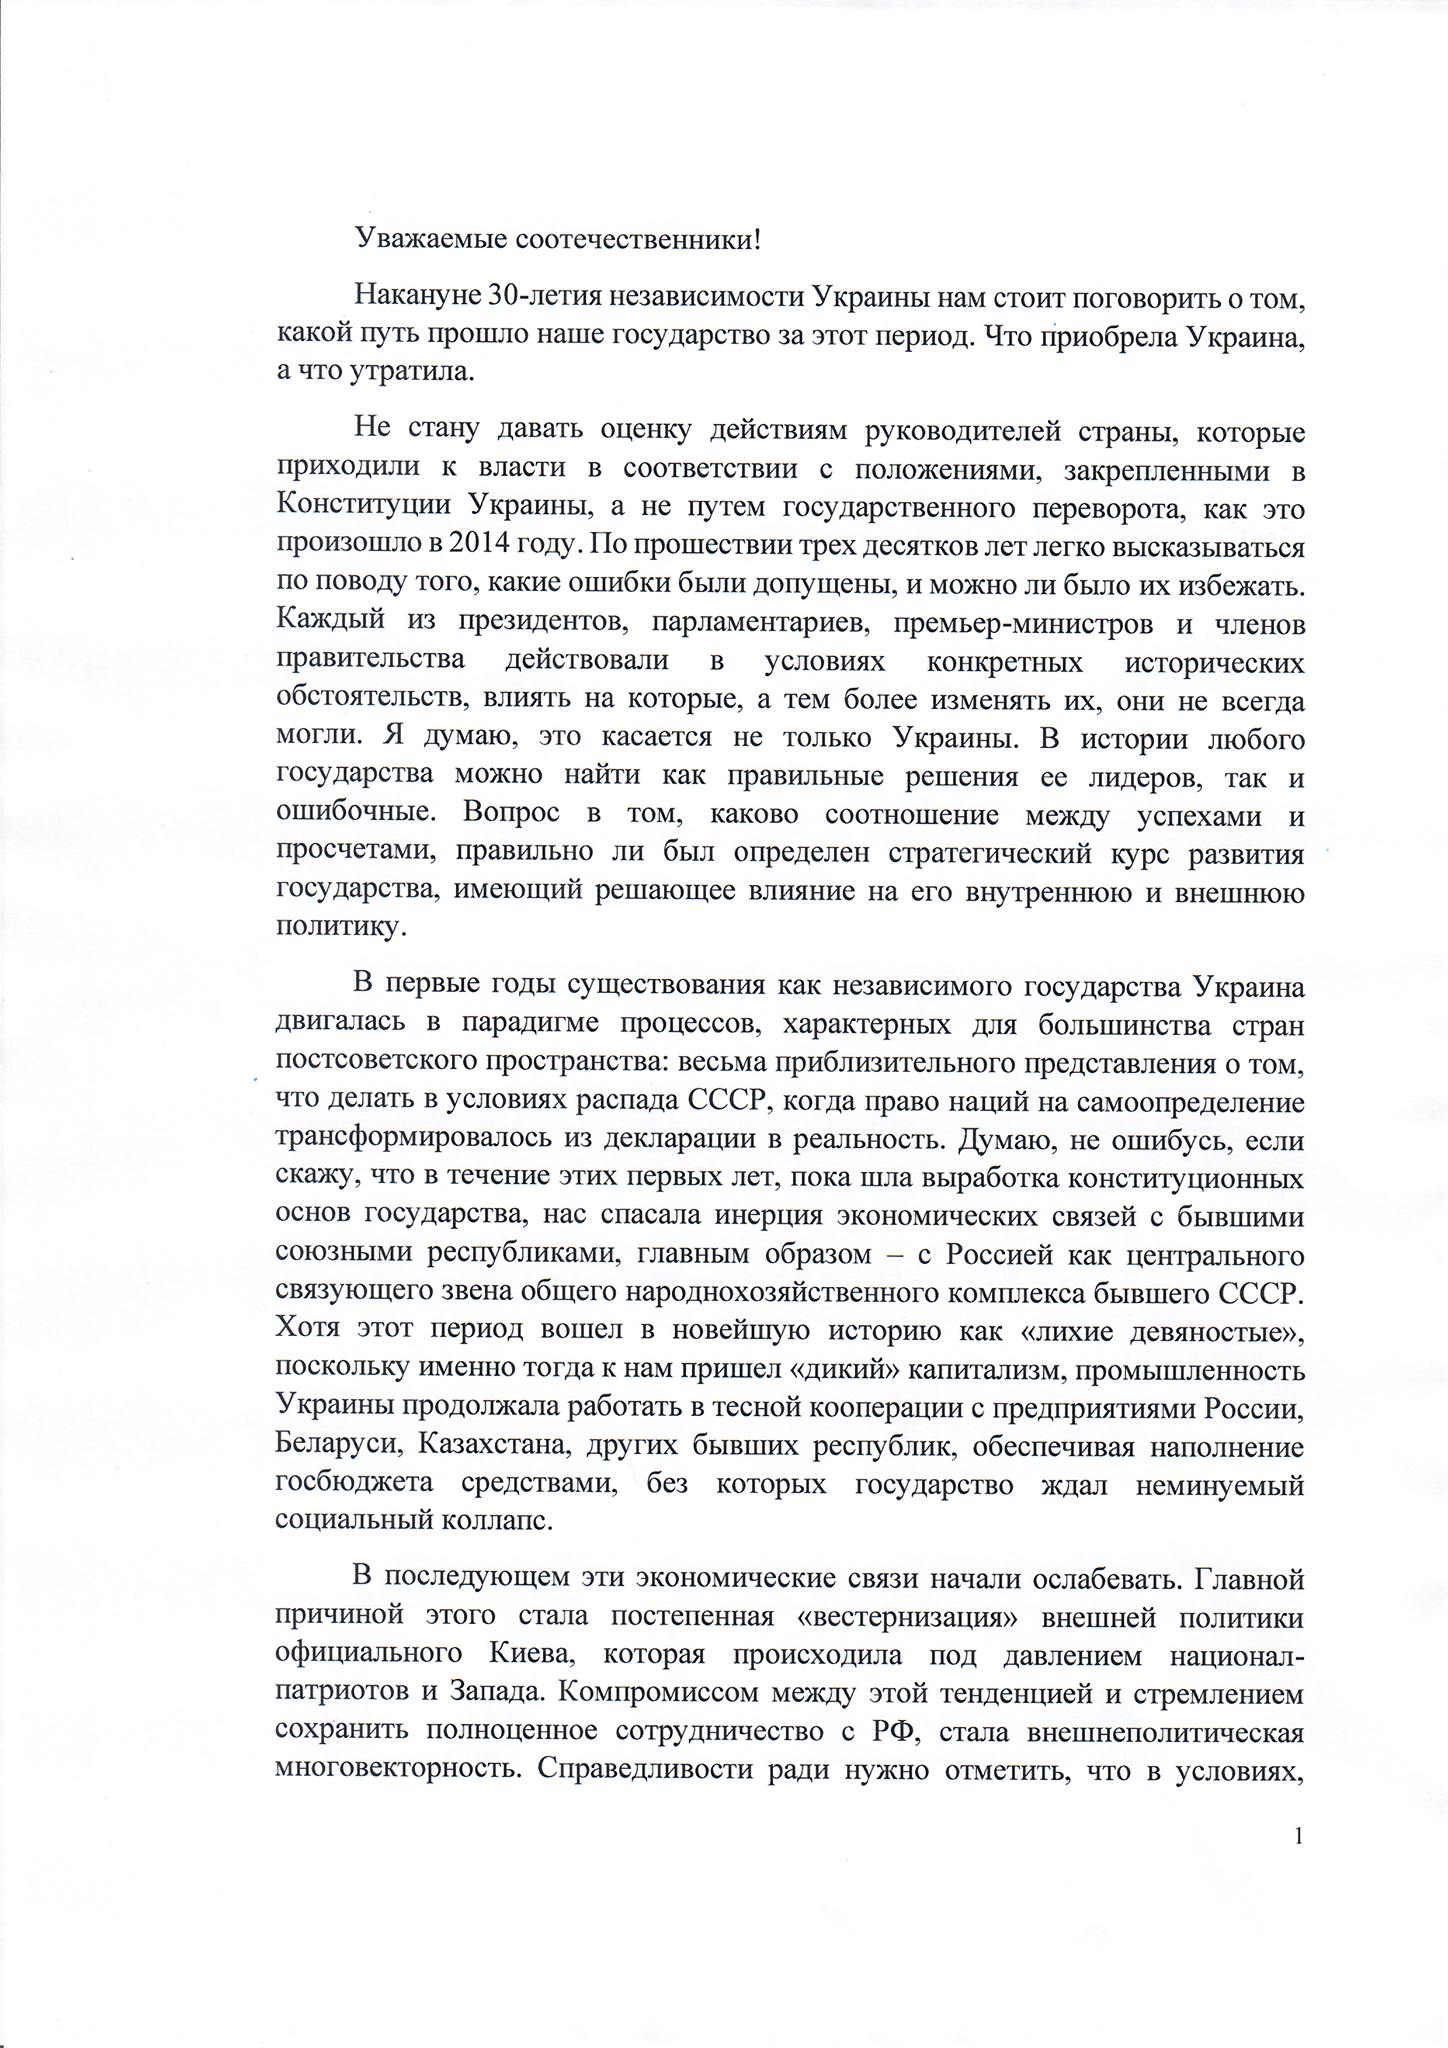 Виктор Янукович обратился к украинцам накануне Дня независимости. Скриншот сообщения в фейсбуке